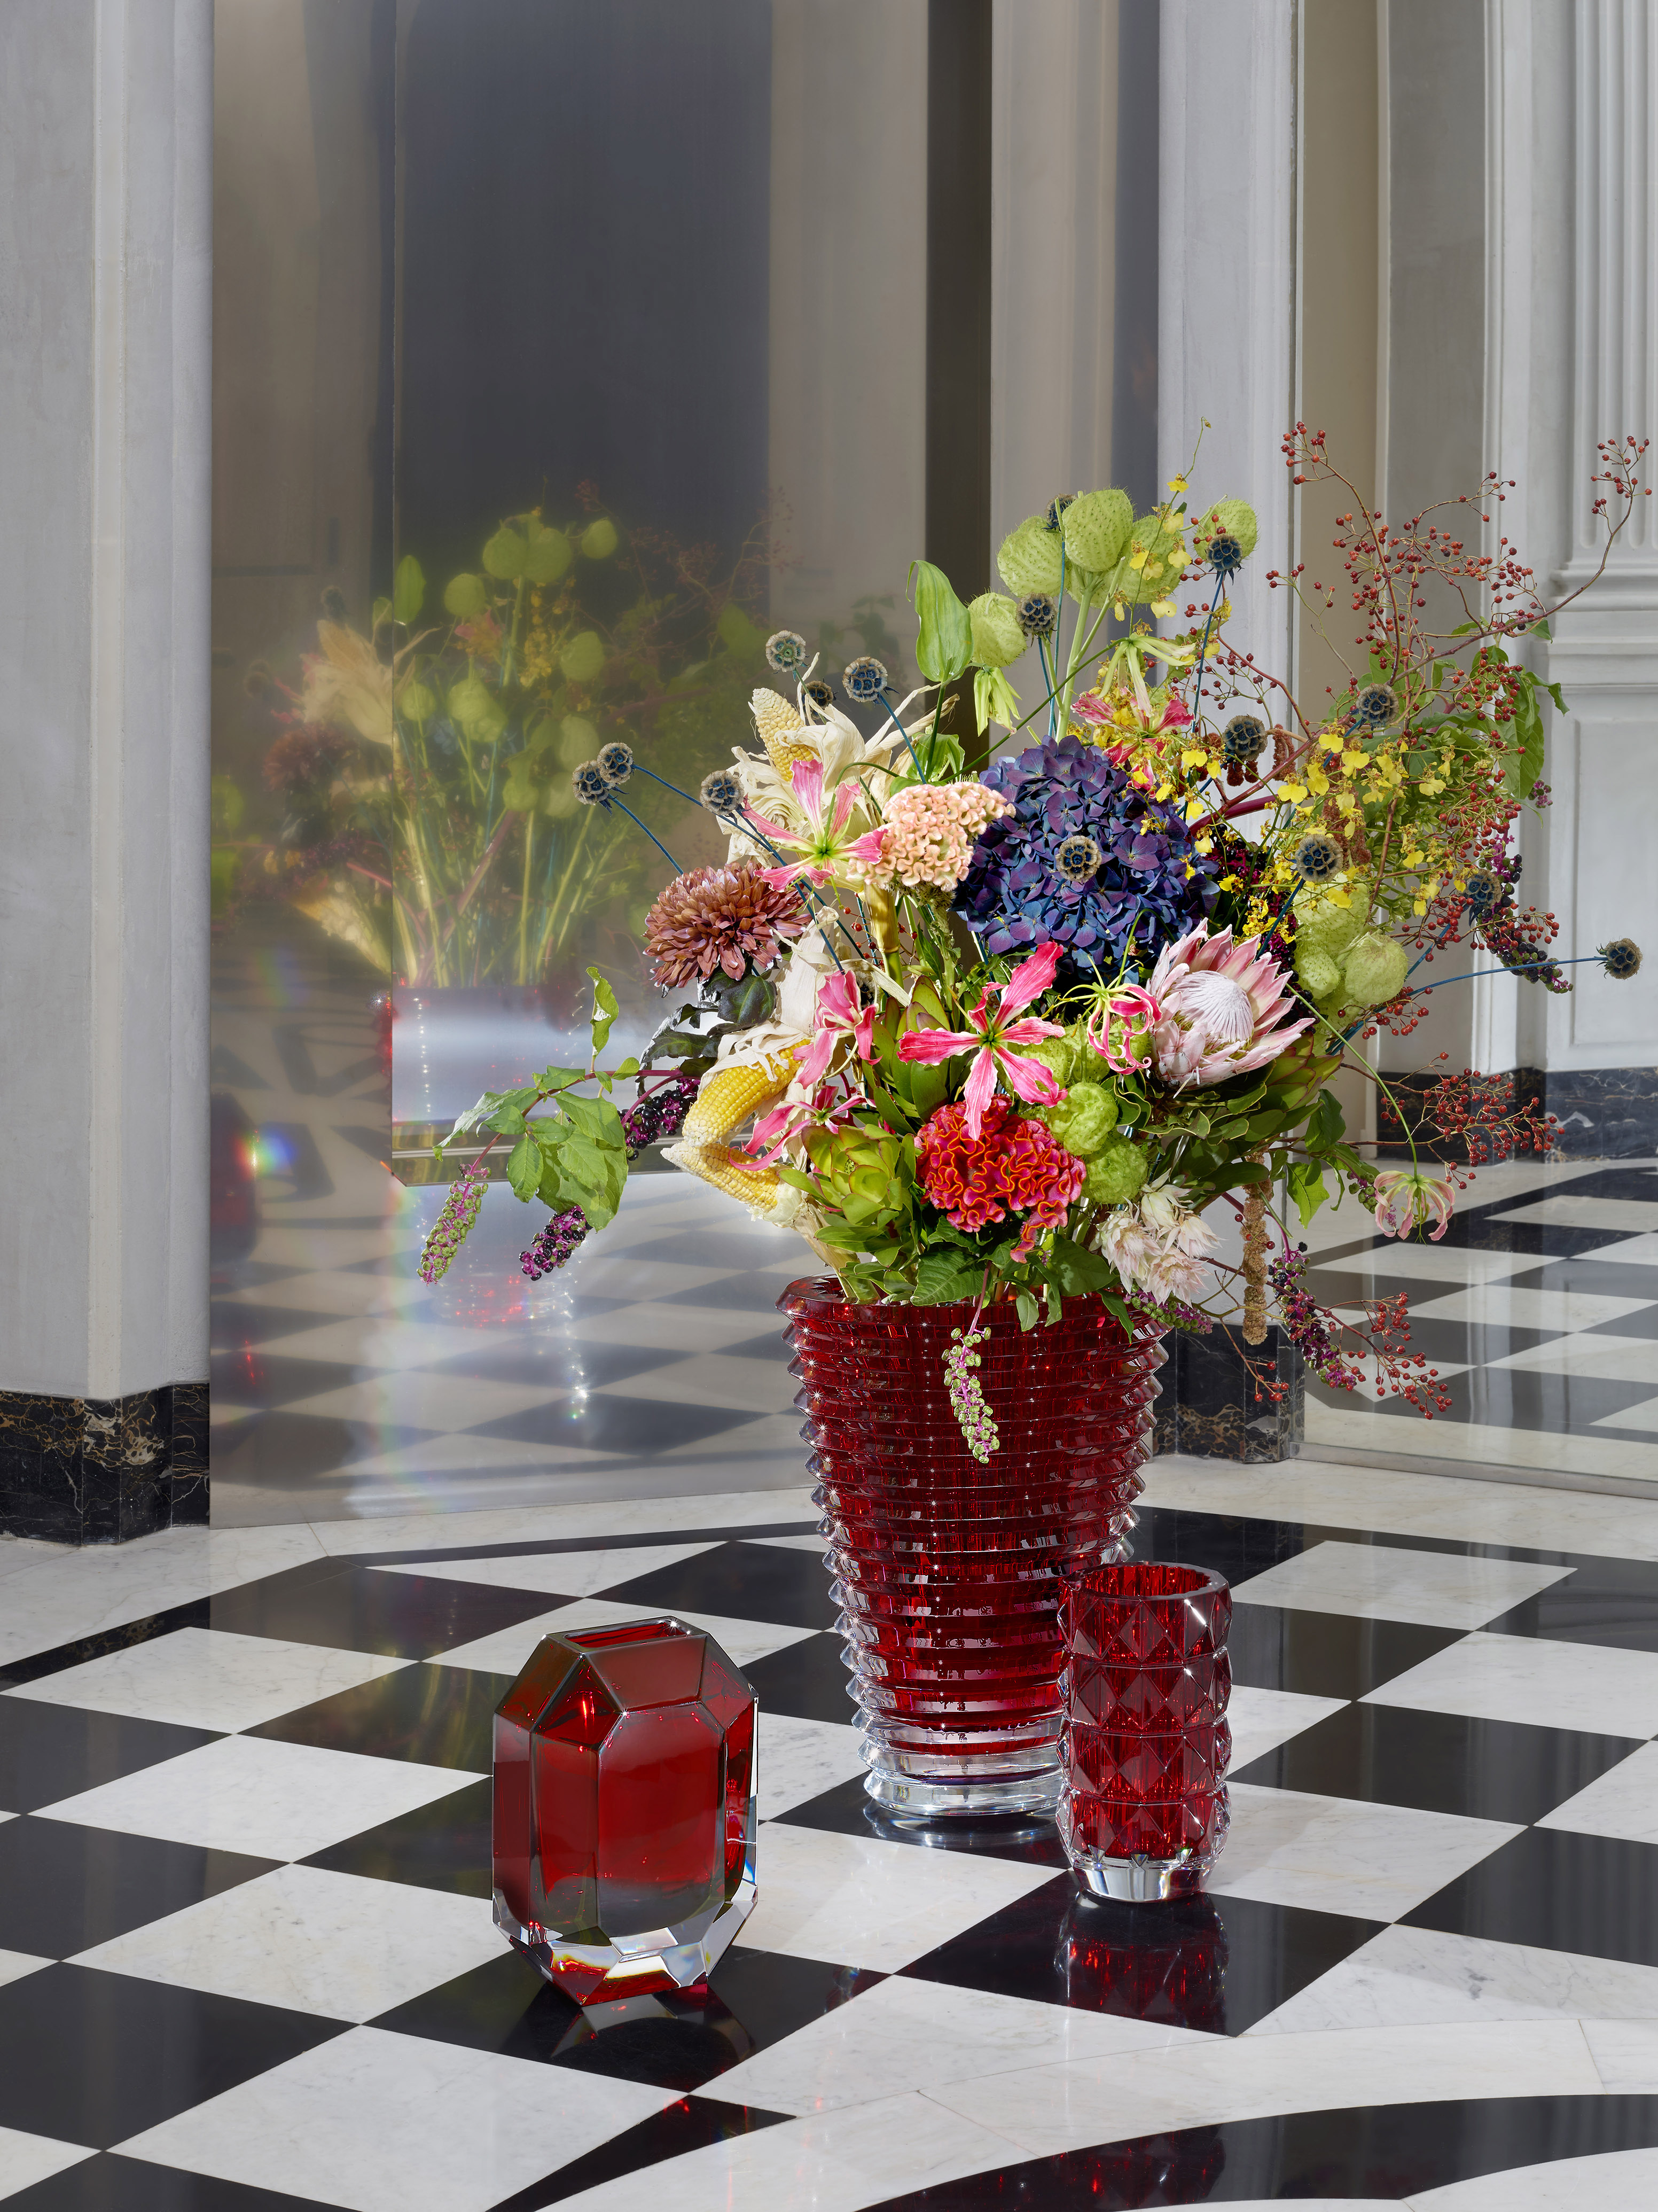 In a bouquet or in a bud vase, - Maison Francis Kurkdjian